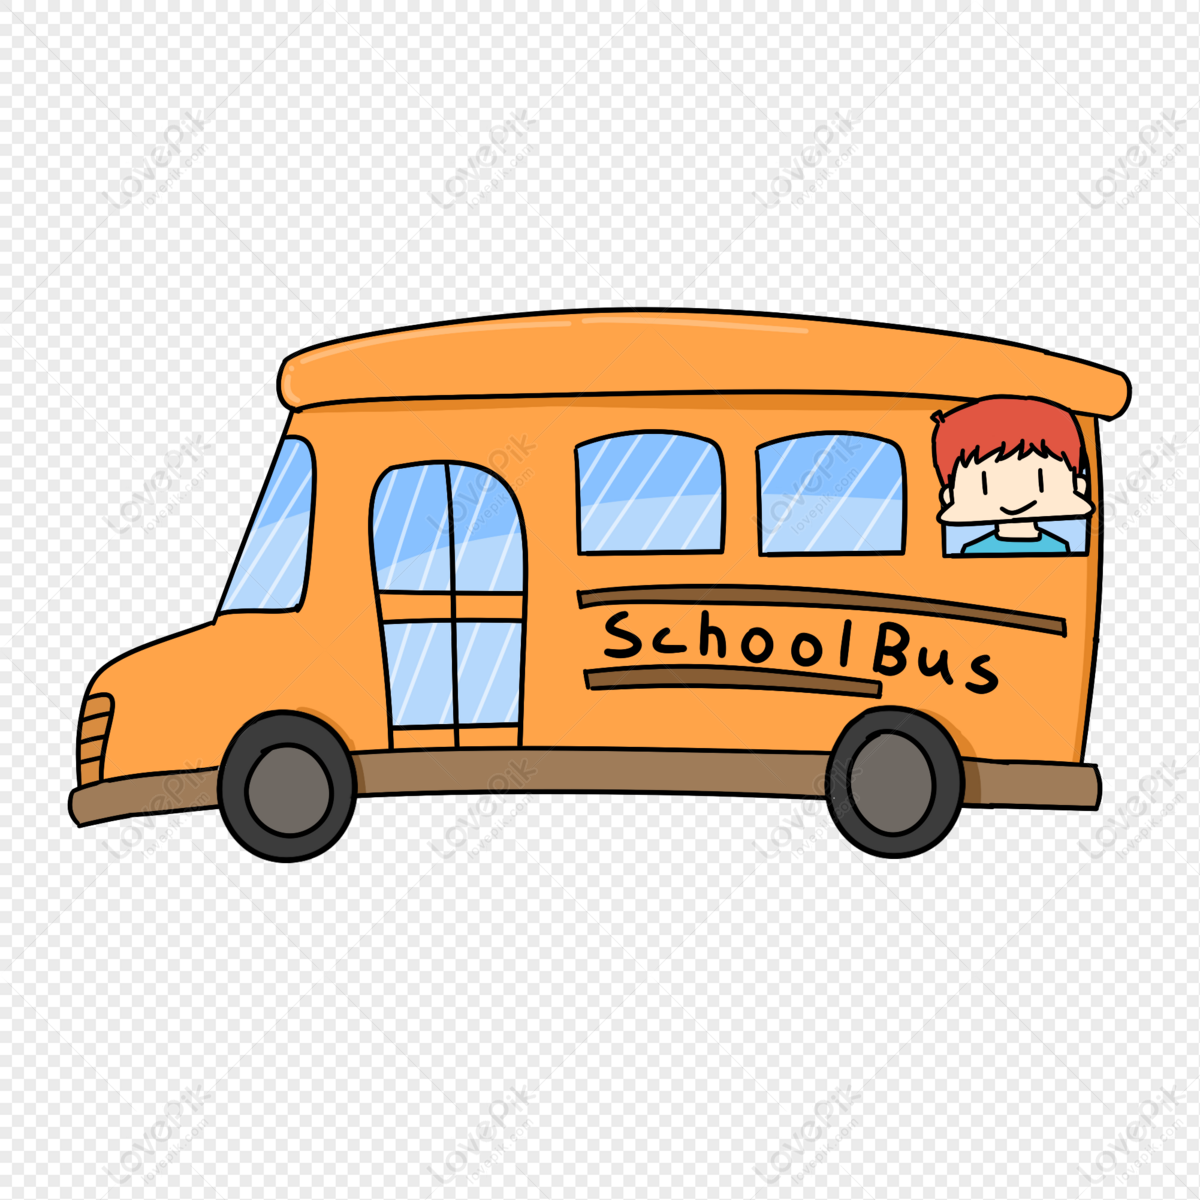 Xe buýt học đường - đây là phương tiện vận chuyển quen thuộc nhất với các bạn học sinh. Những cuộc hành trình lên xuống xe buýt học đường sẽ khắc sâu trong ký ức của tuổi thơ. Hãy cùng xem hình ảnh xe buýt học đường đáng yêu này!